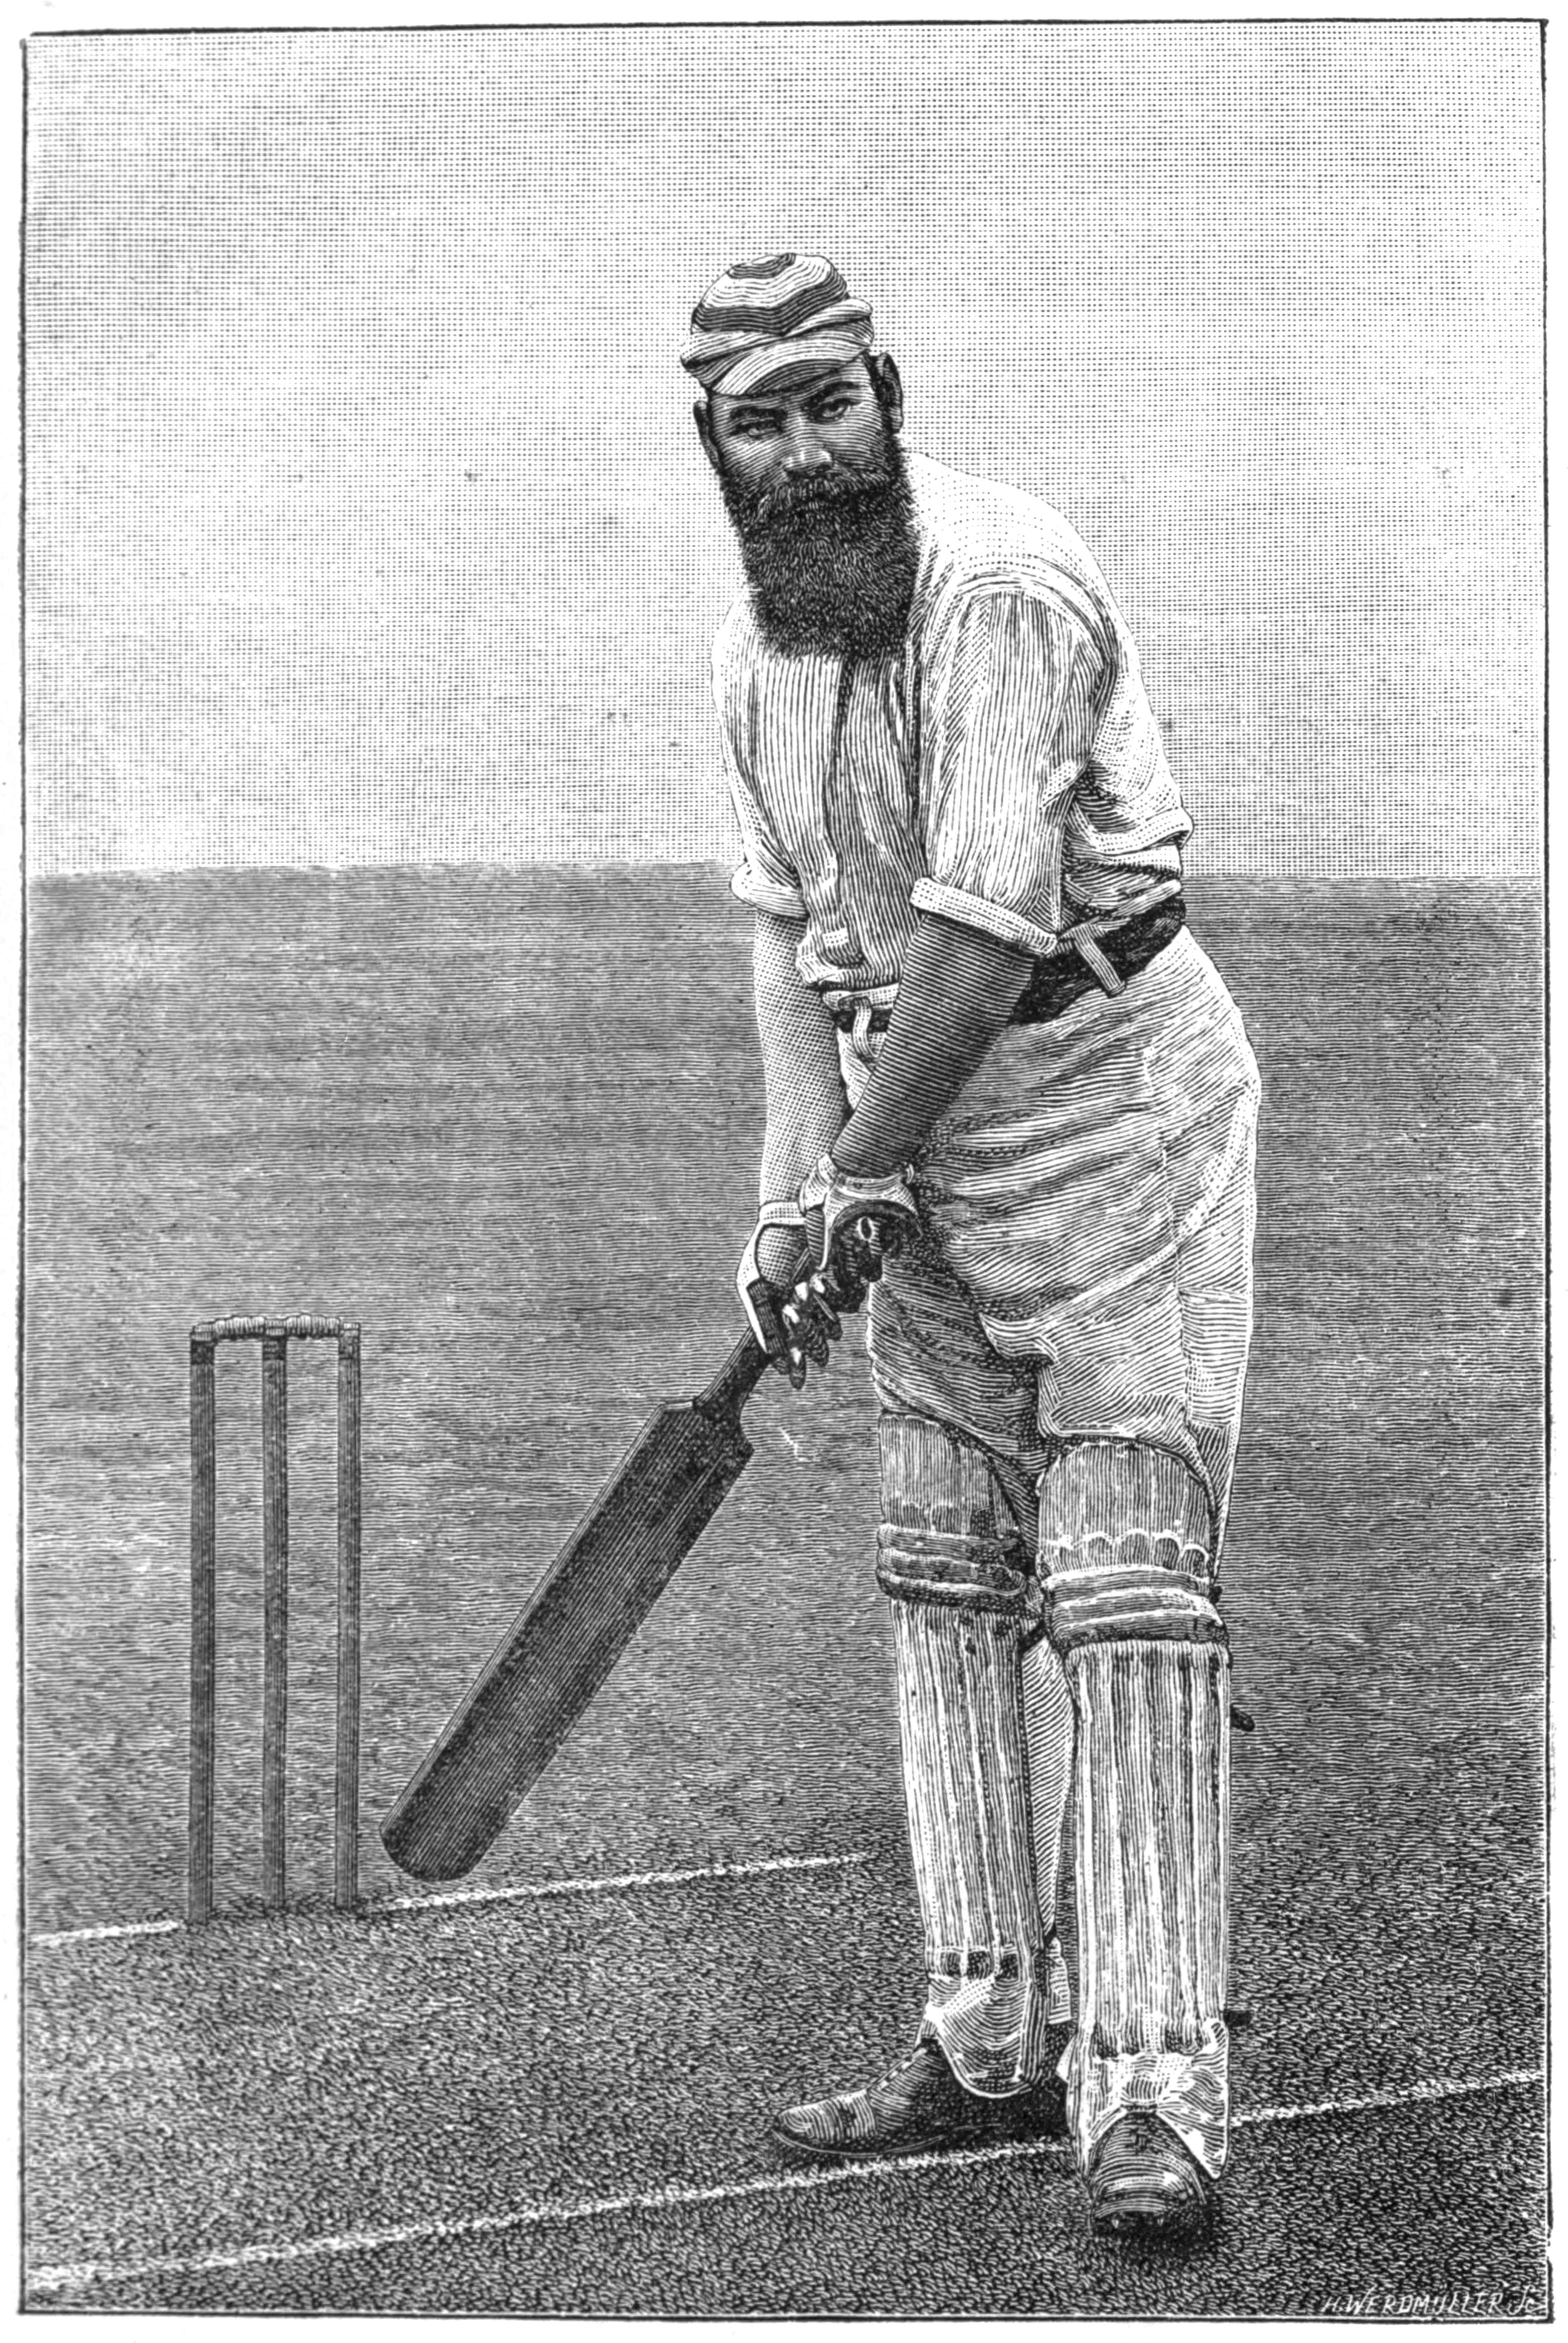 History Of Cricket Photos